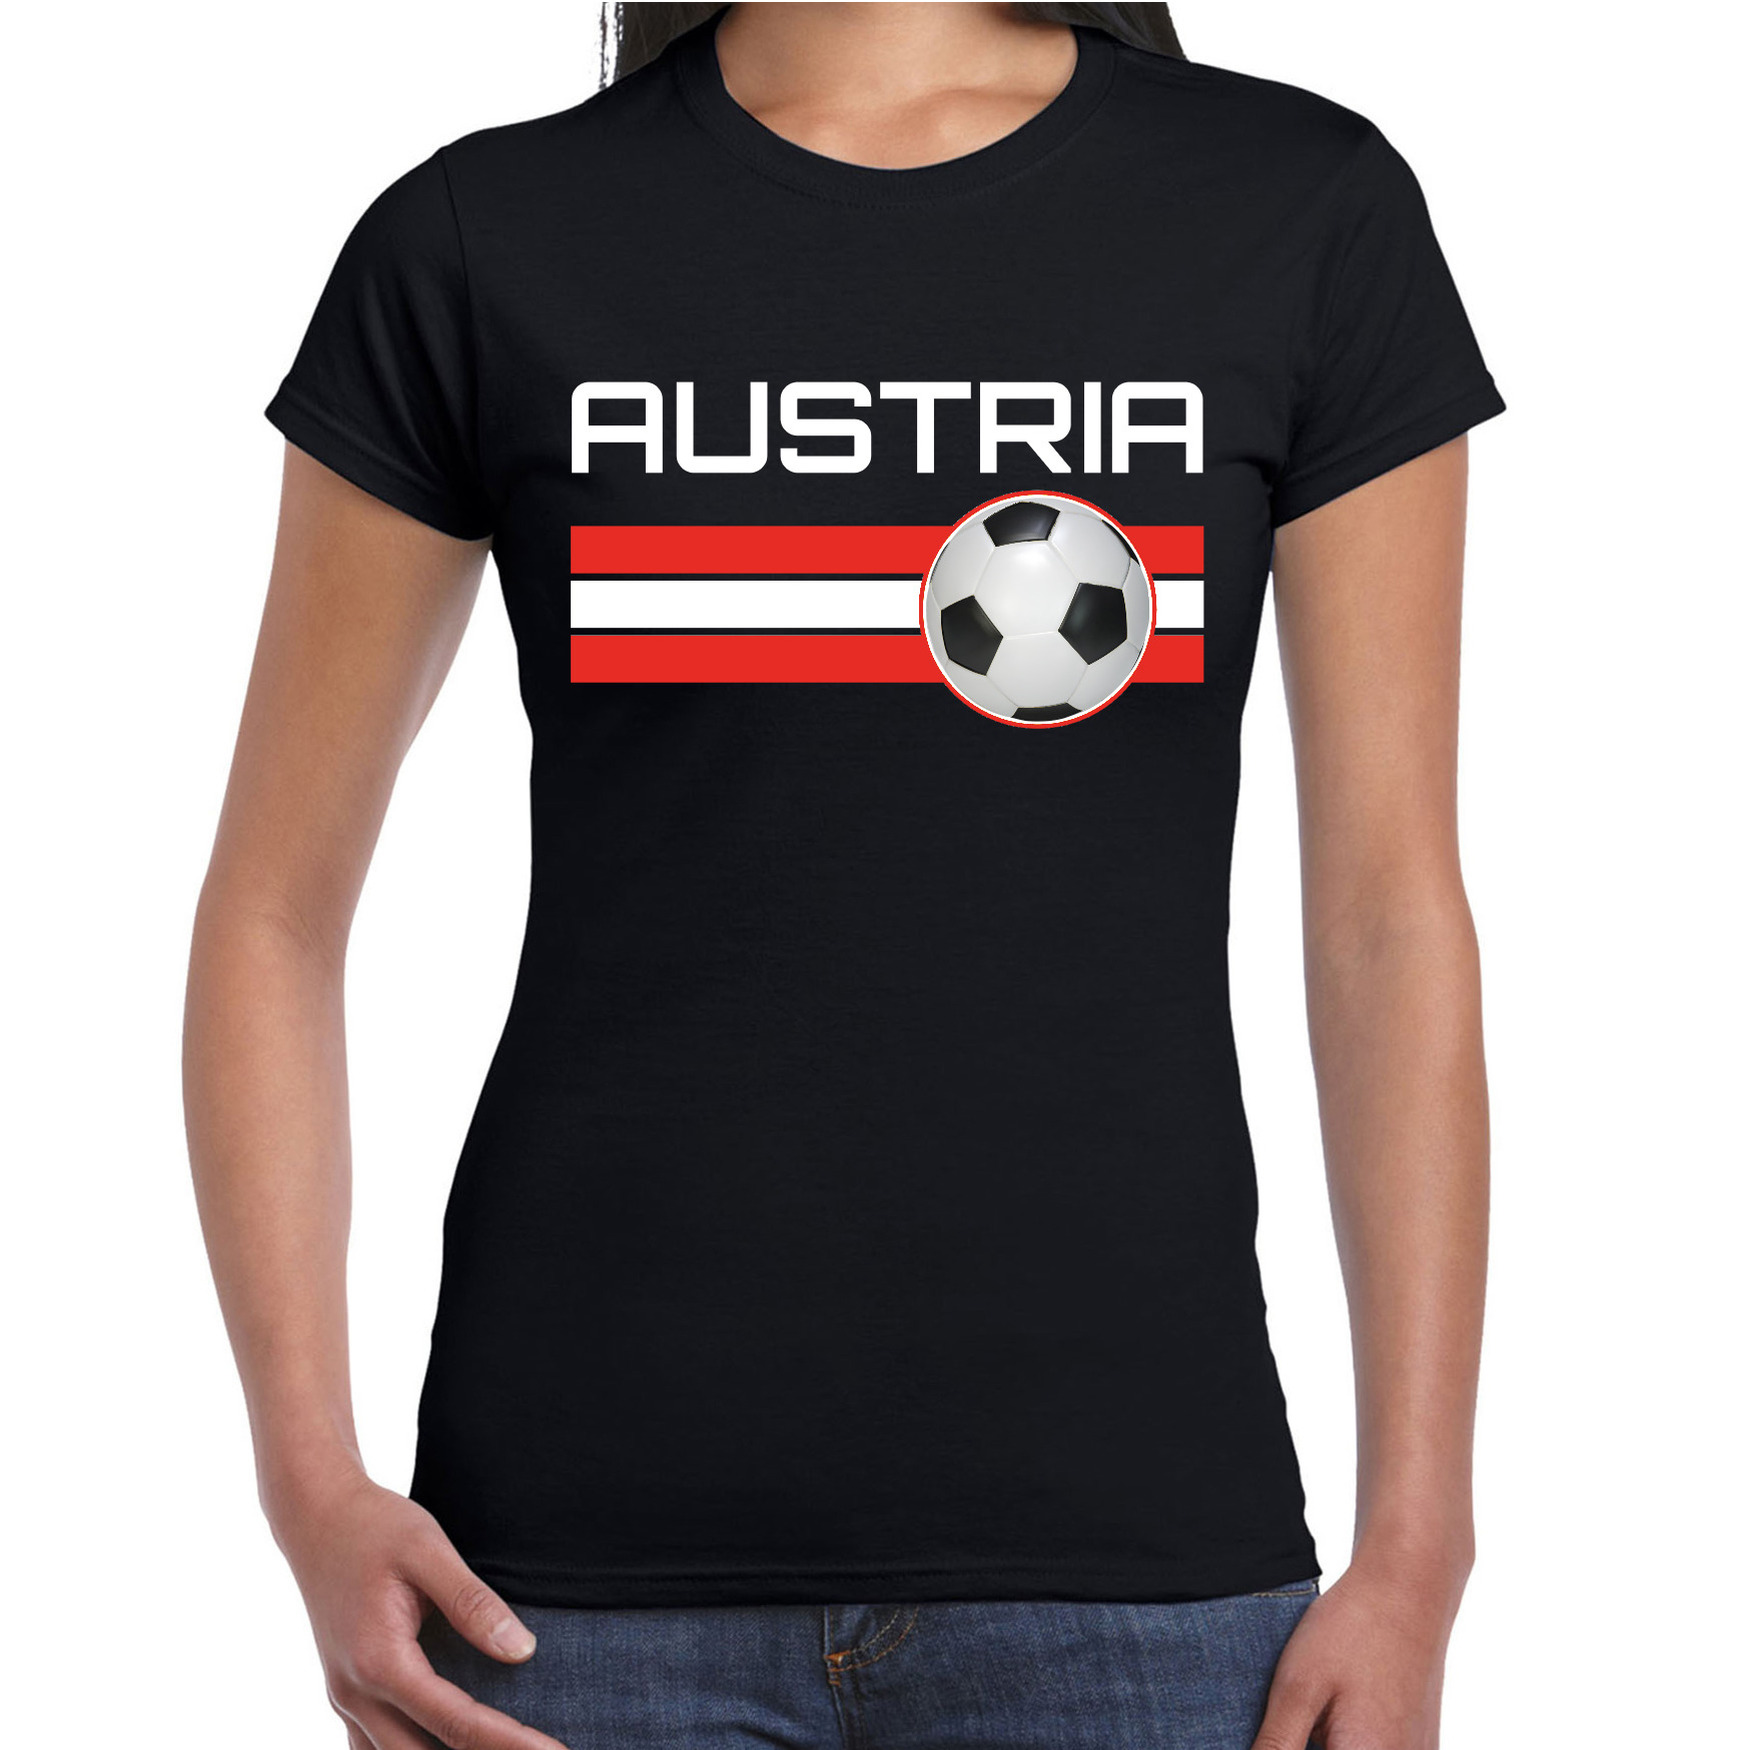 Austria-Oostenrijk voetbal-landen shirt met voetbal en Oostenrijkse vlag zwart voor dames